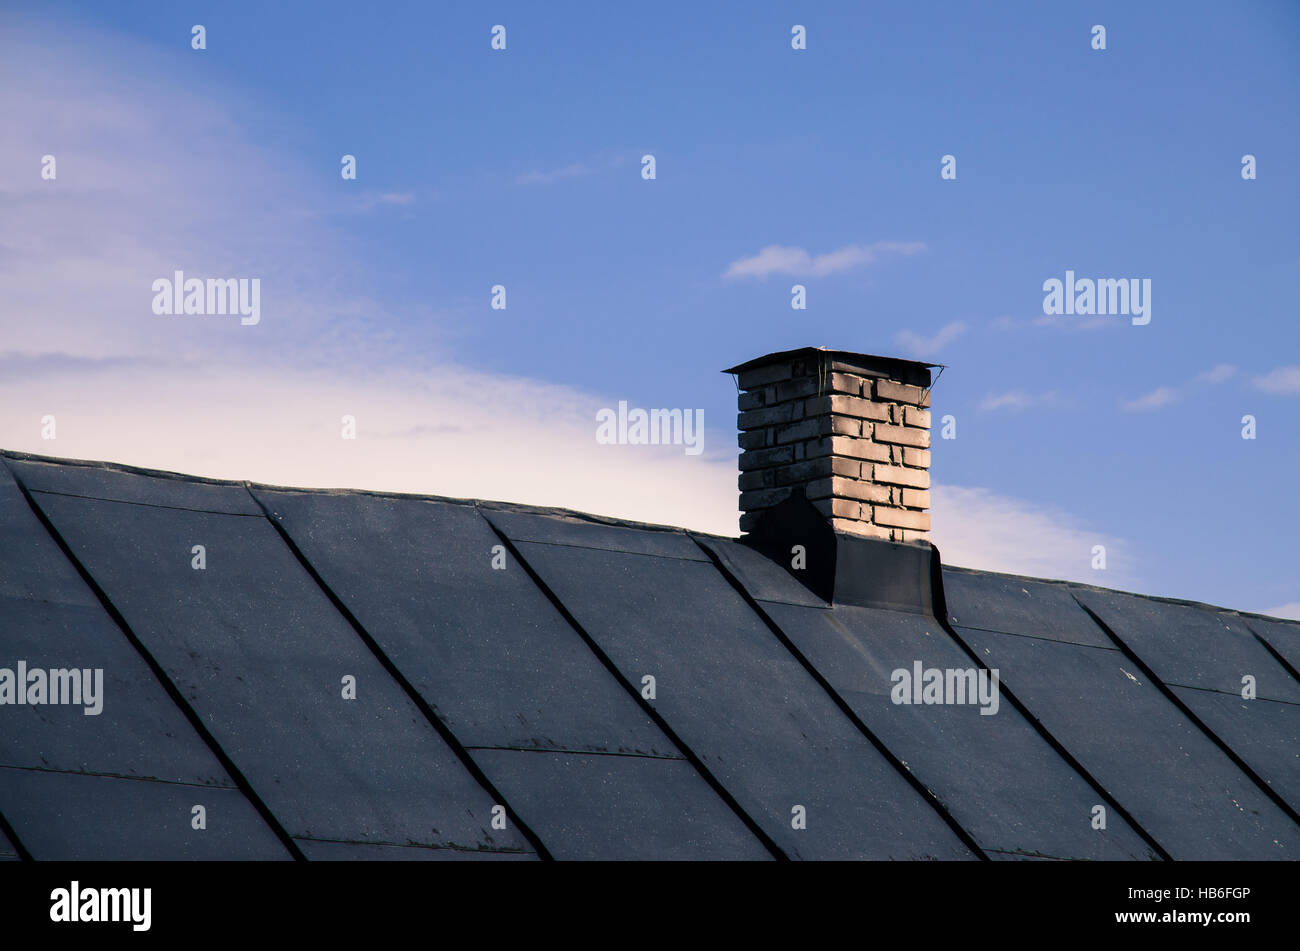 Cheminée en brique sur le toit de la maison Banque D'Images